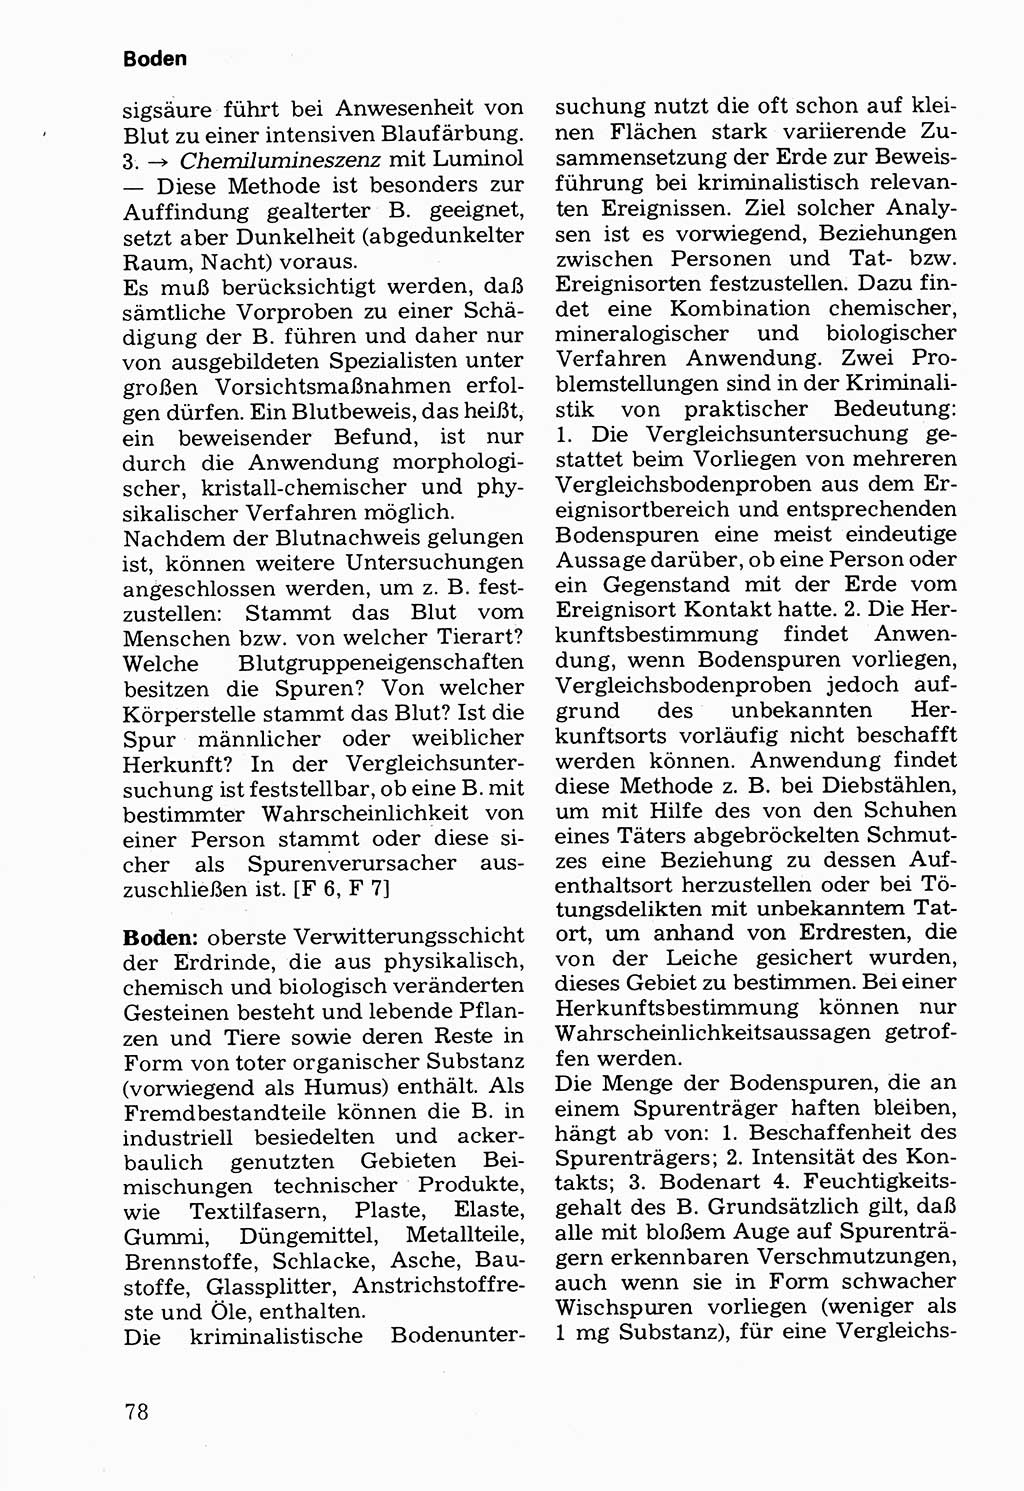 Wörterbuch der sozialistischen Kriminalistik [Deutsche Demokratische Republik (DDR)] 1981, Seite 78 (Wb. soz. Krim. DDR 1981, S. 78)